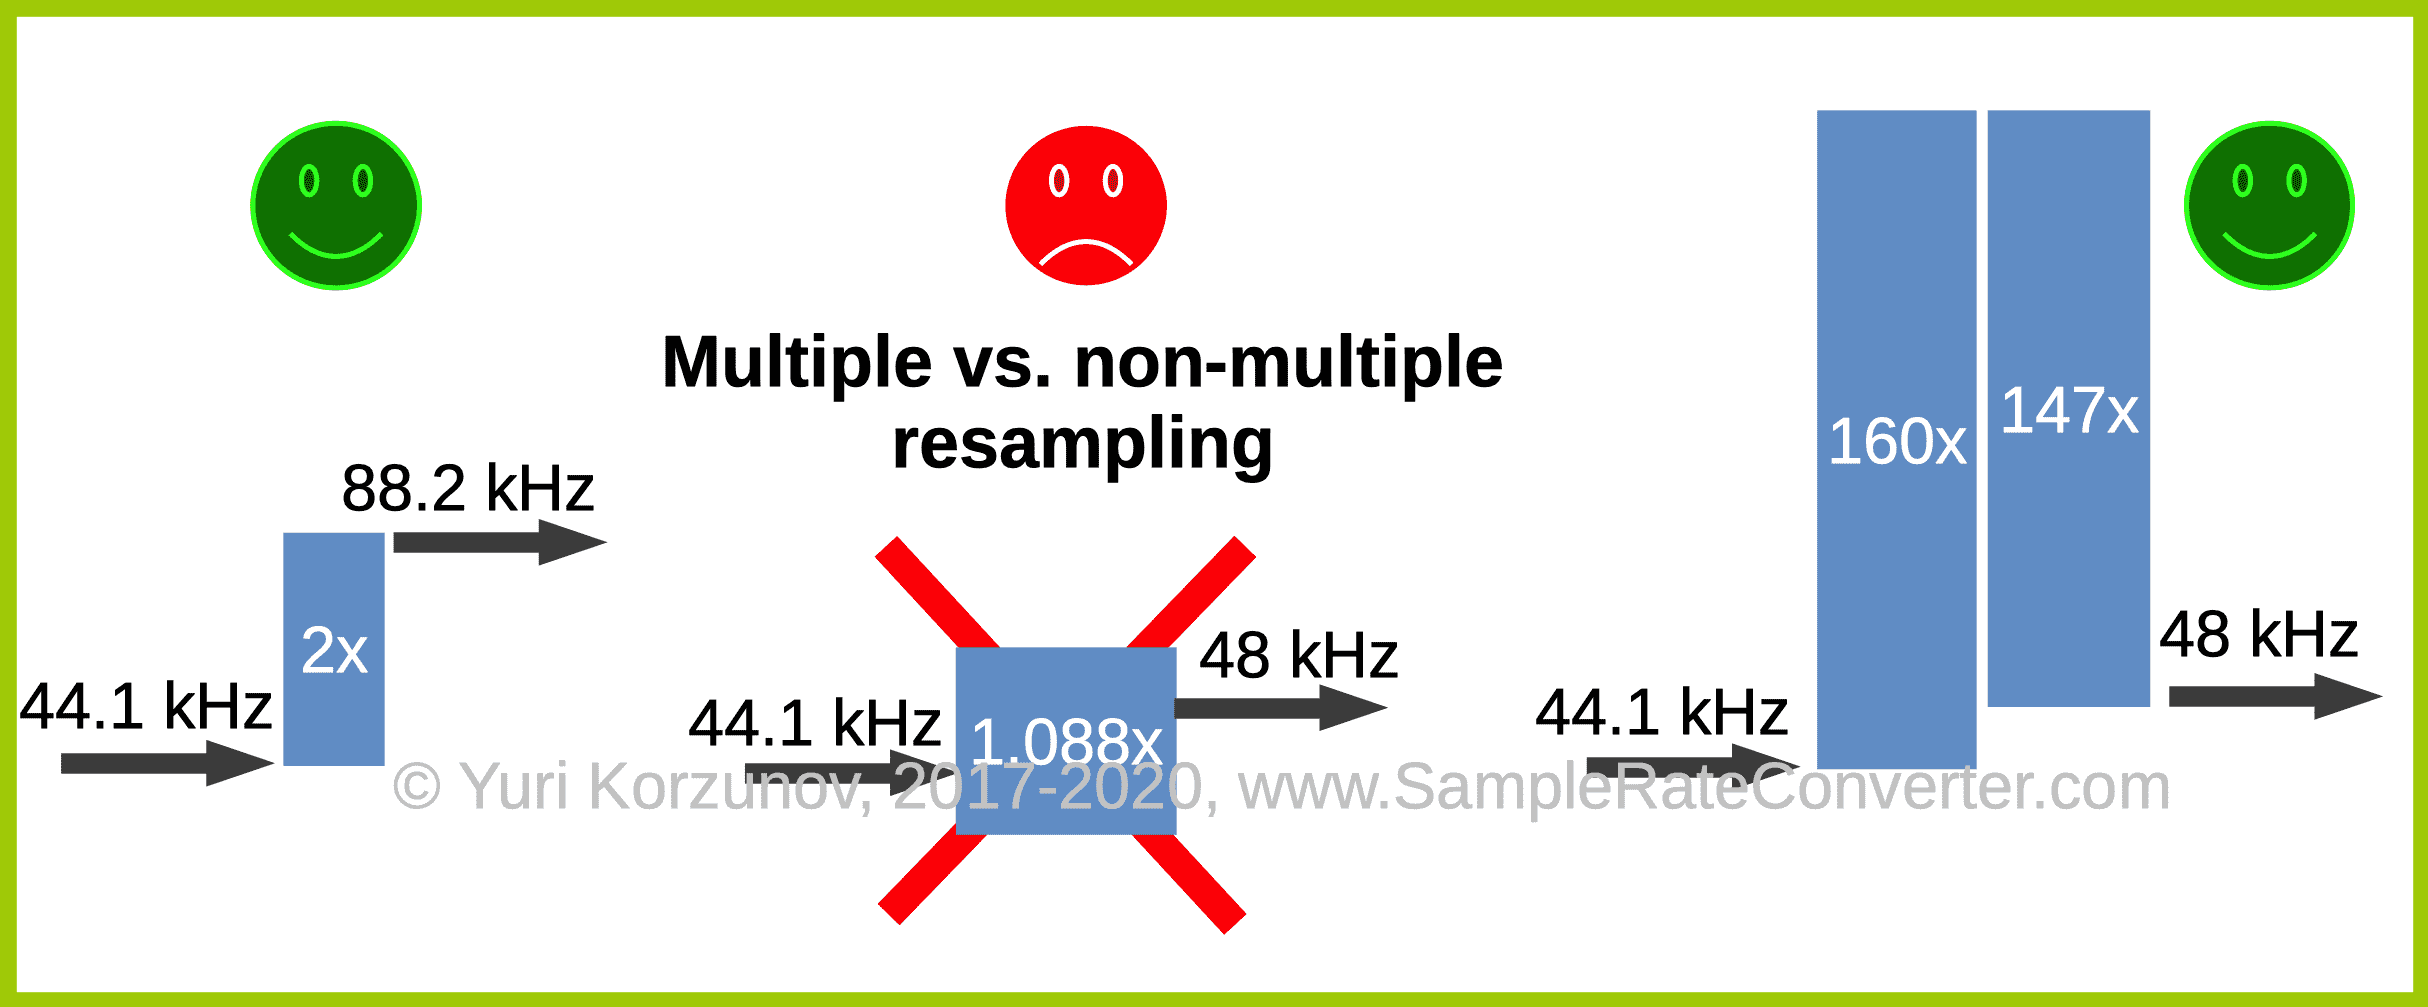 Multiple vs. non-multiple resampling